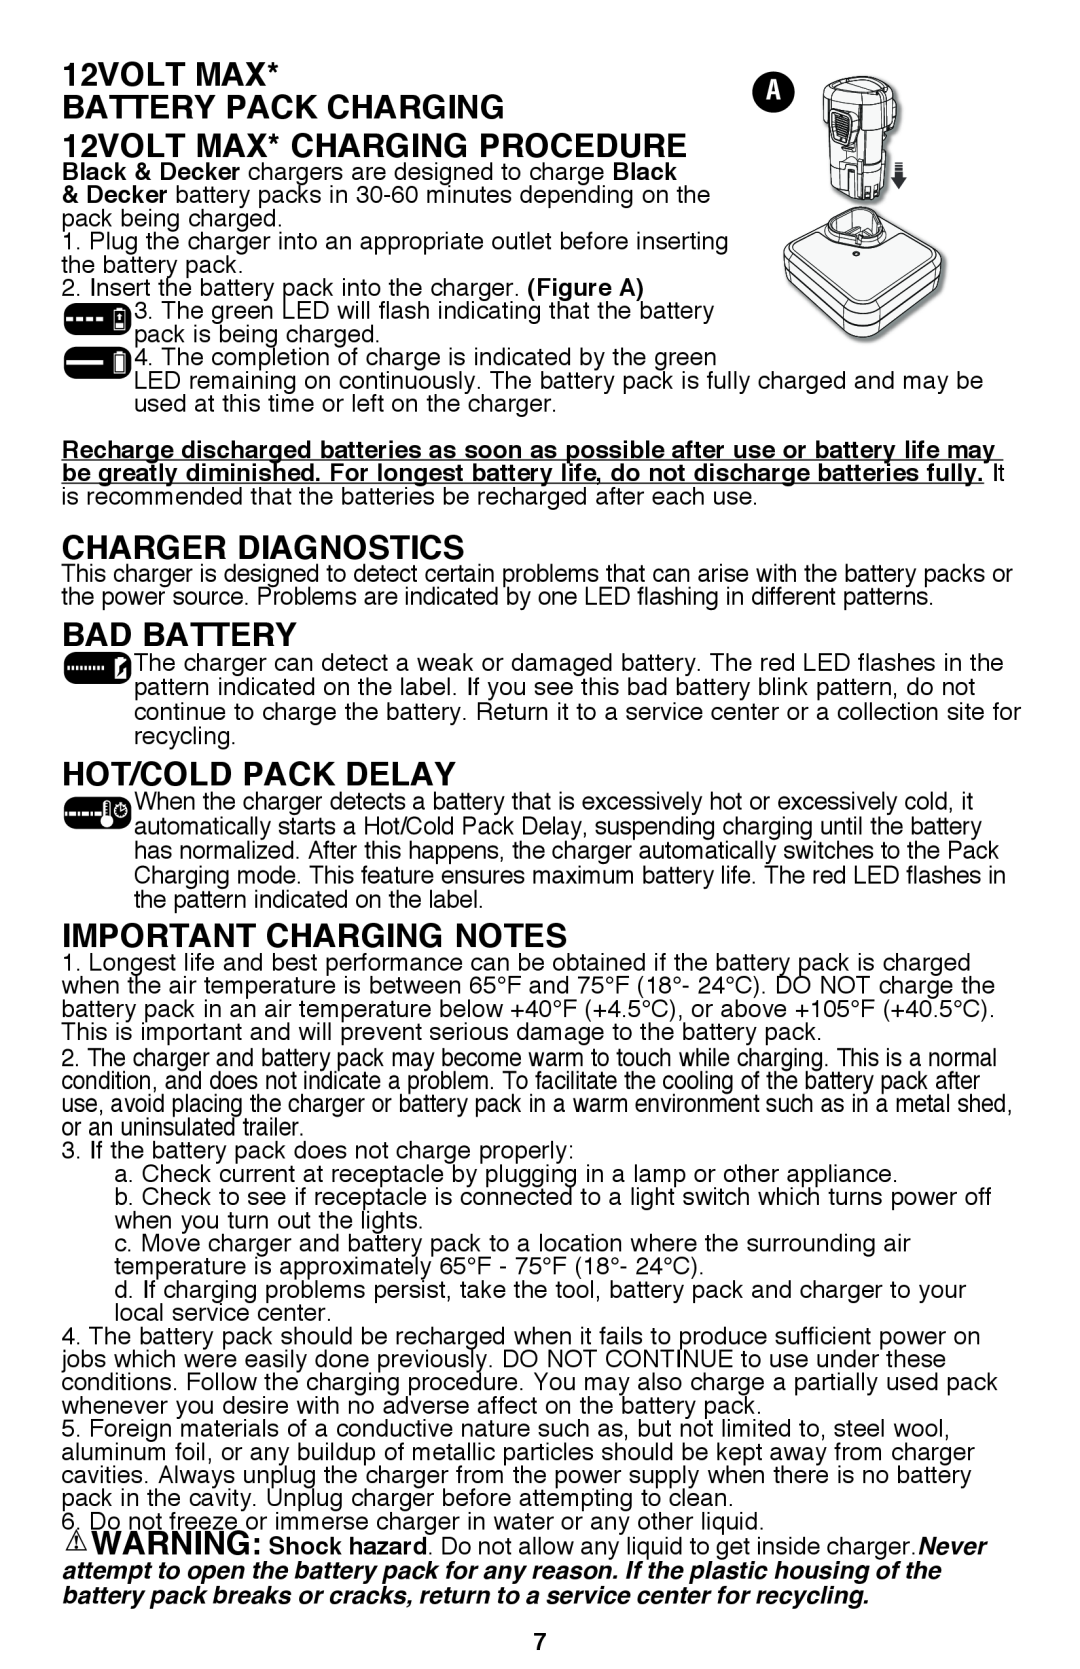 Black & Decker BDCF12, BDCF20 Battery Pack Charging, 12volt max* Charging Procedure, Charger Diagnostics, Bad battery 